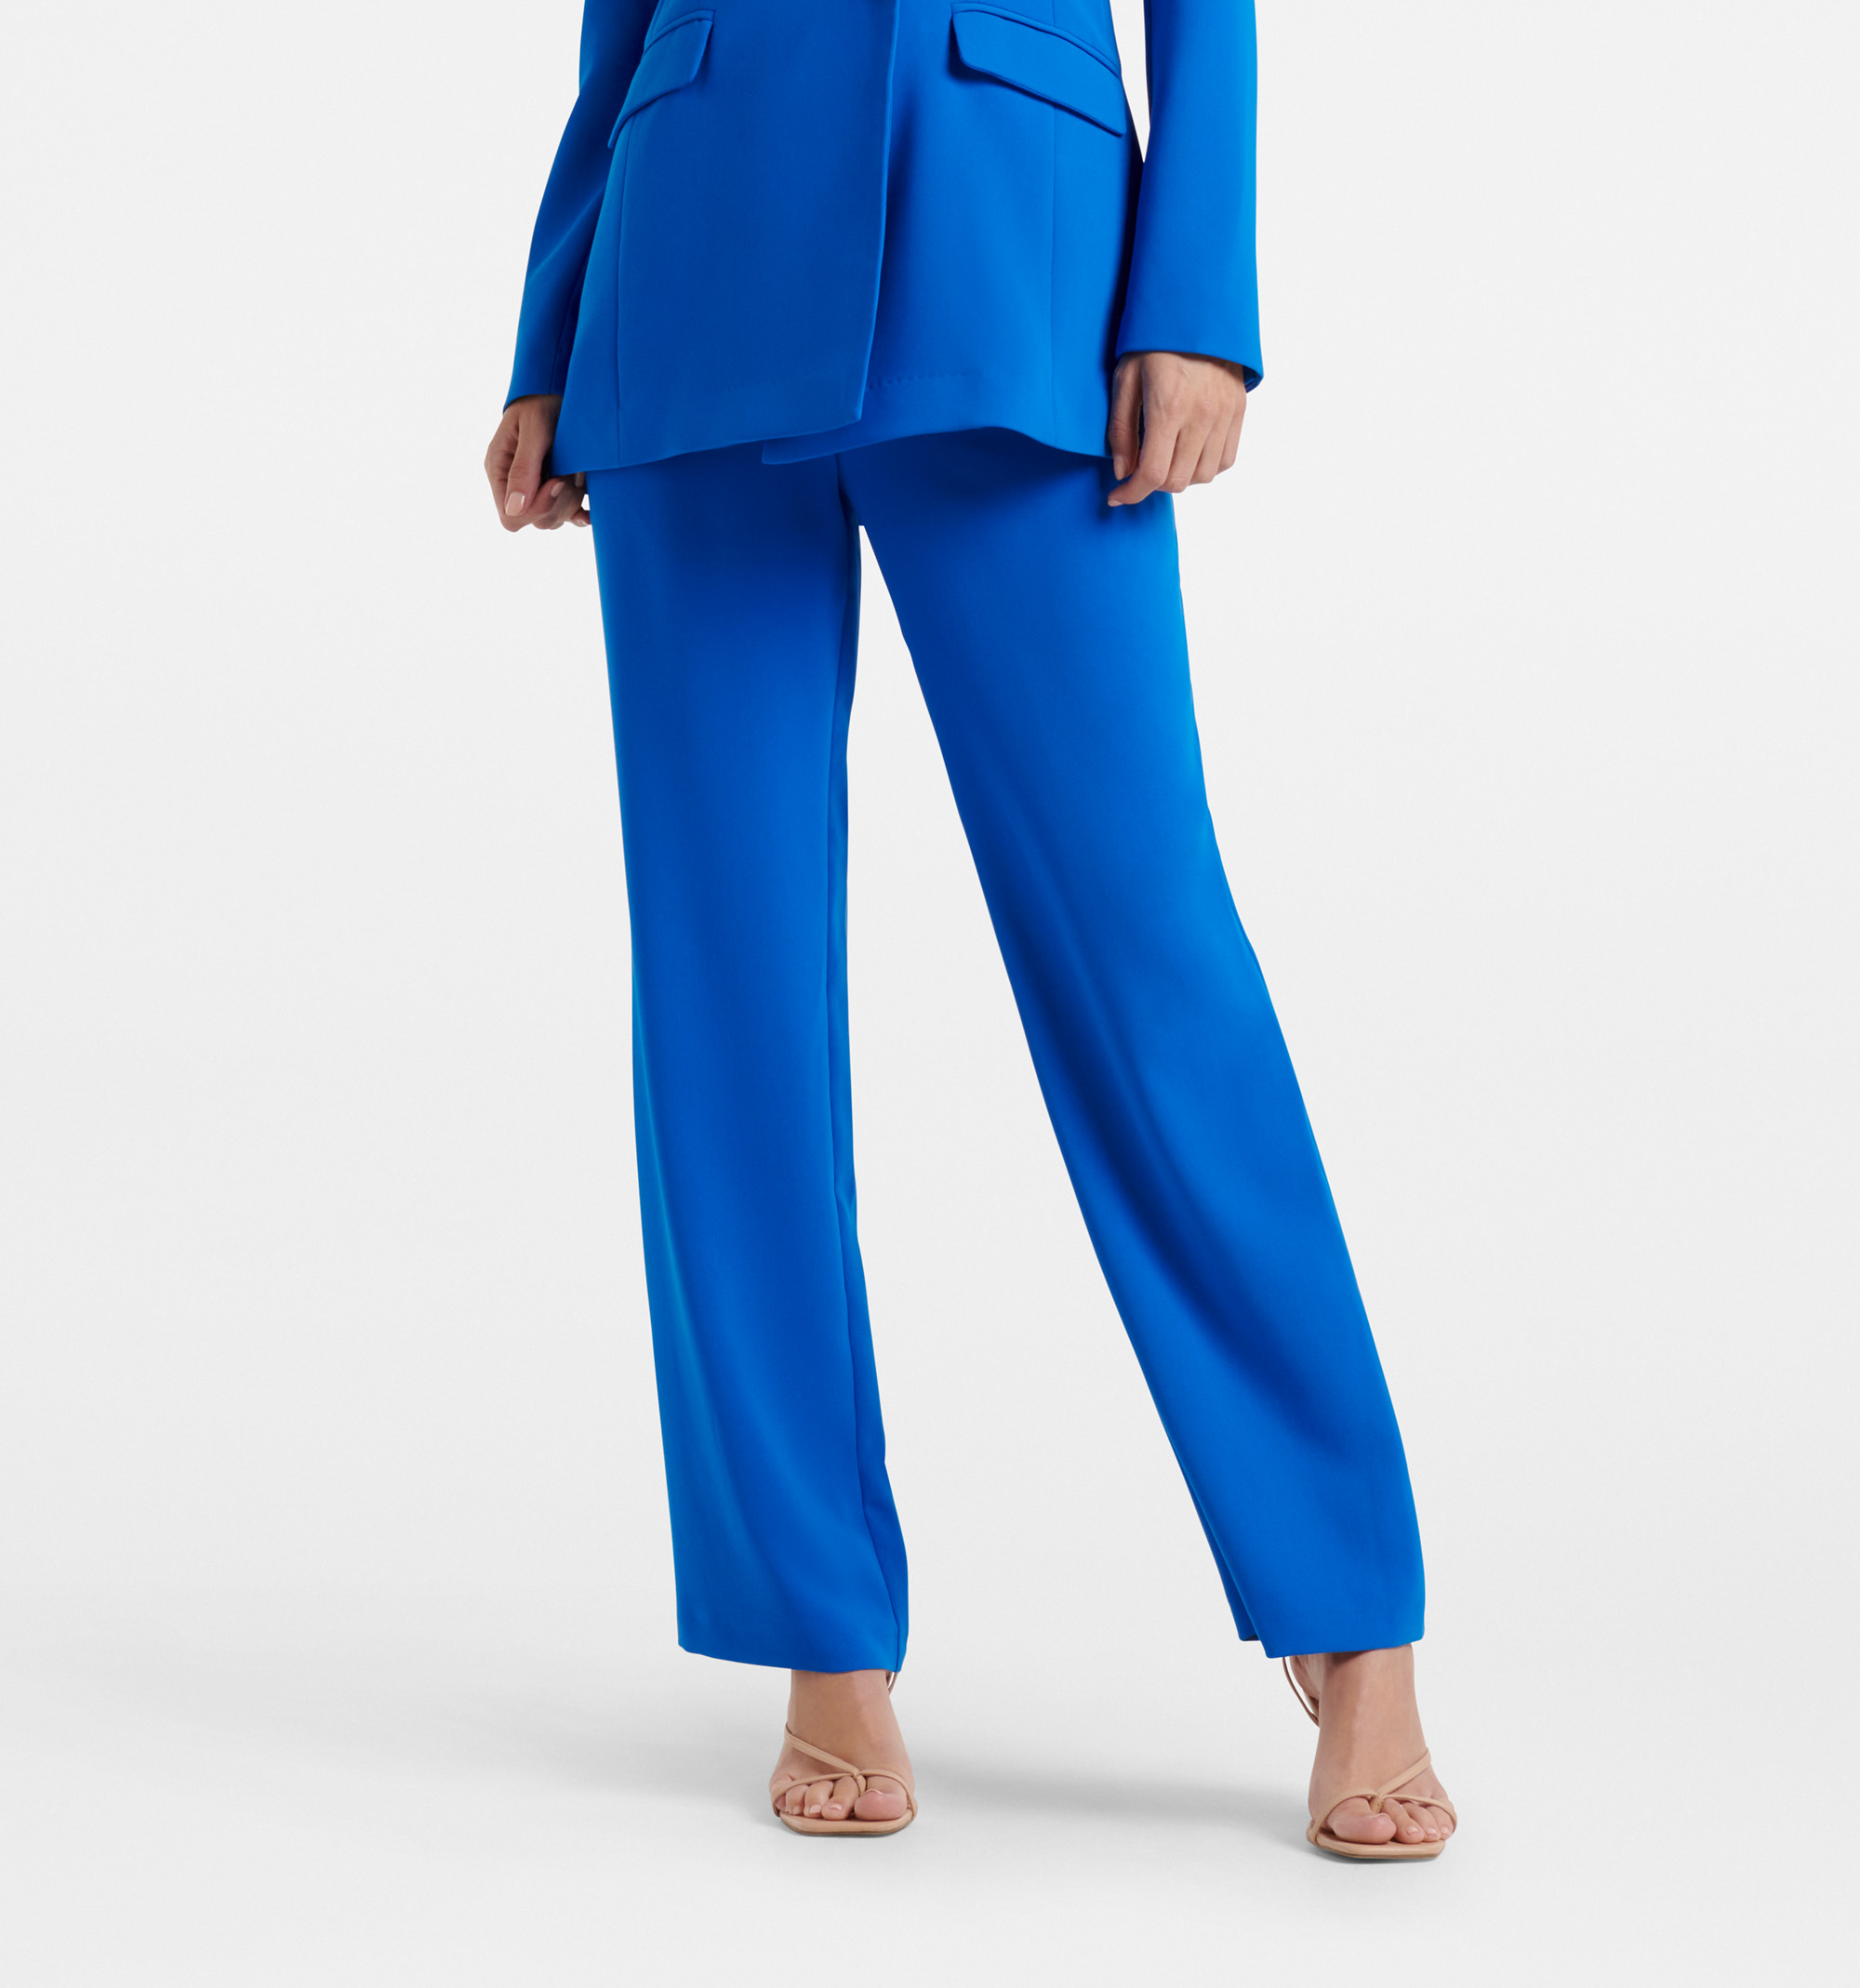 Teal Blue Woven Zari Straight Cut Cigarette Pants Suit LSTV125263